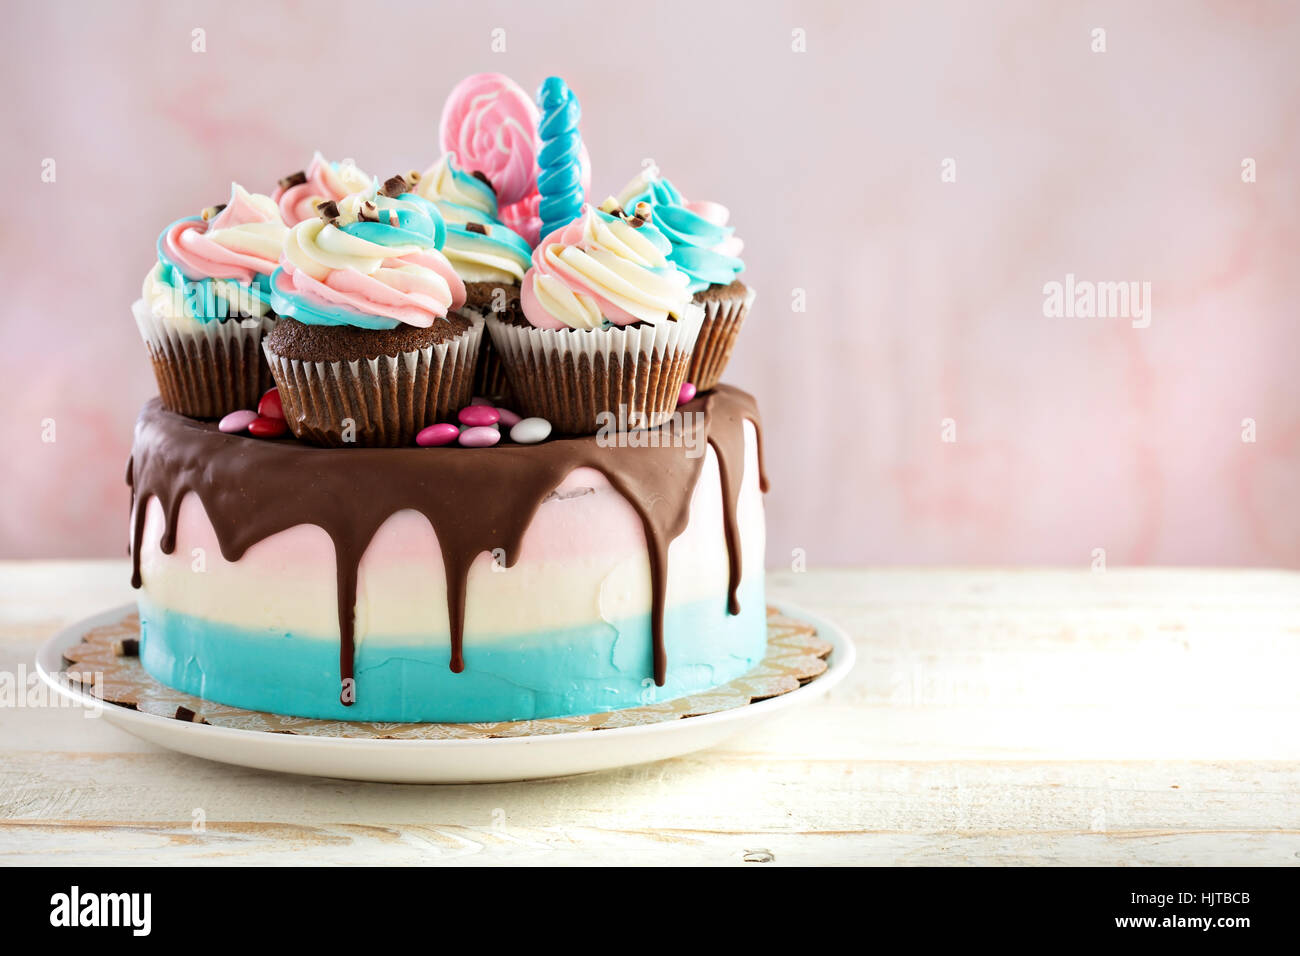 Gâteau de fête rose et bleu Banque D'Images